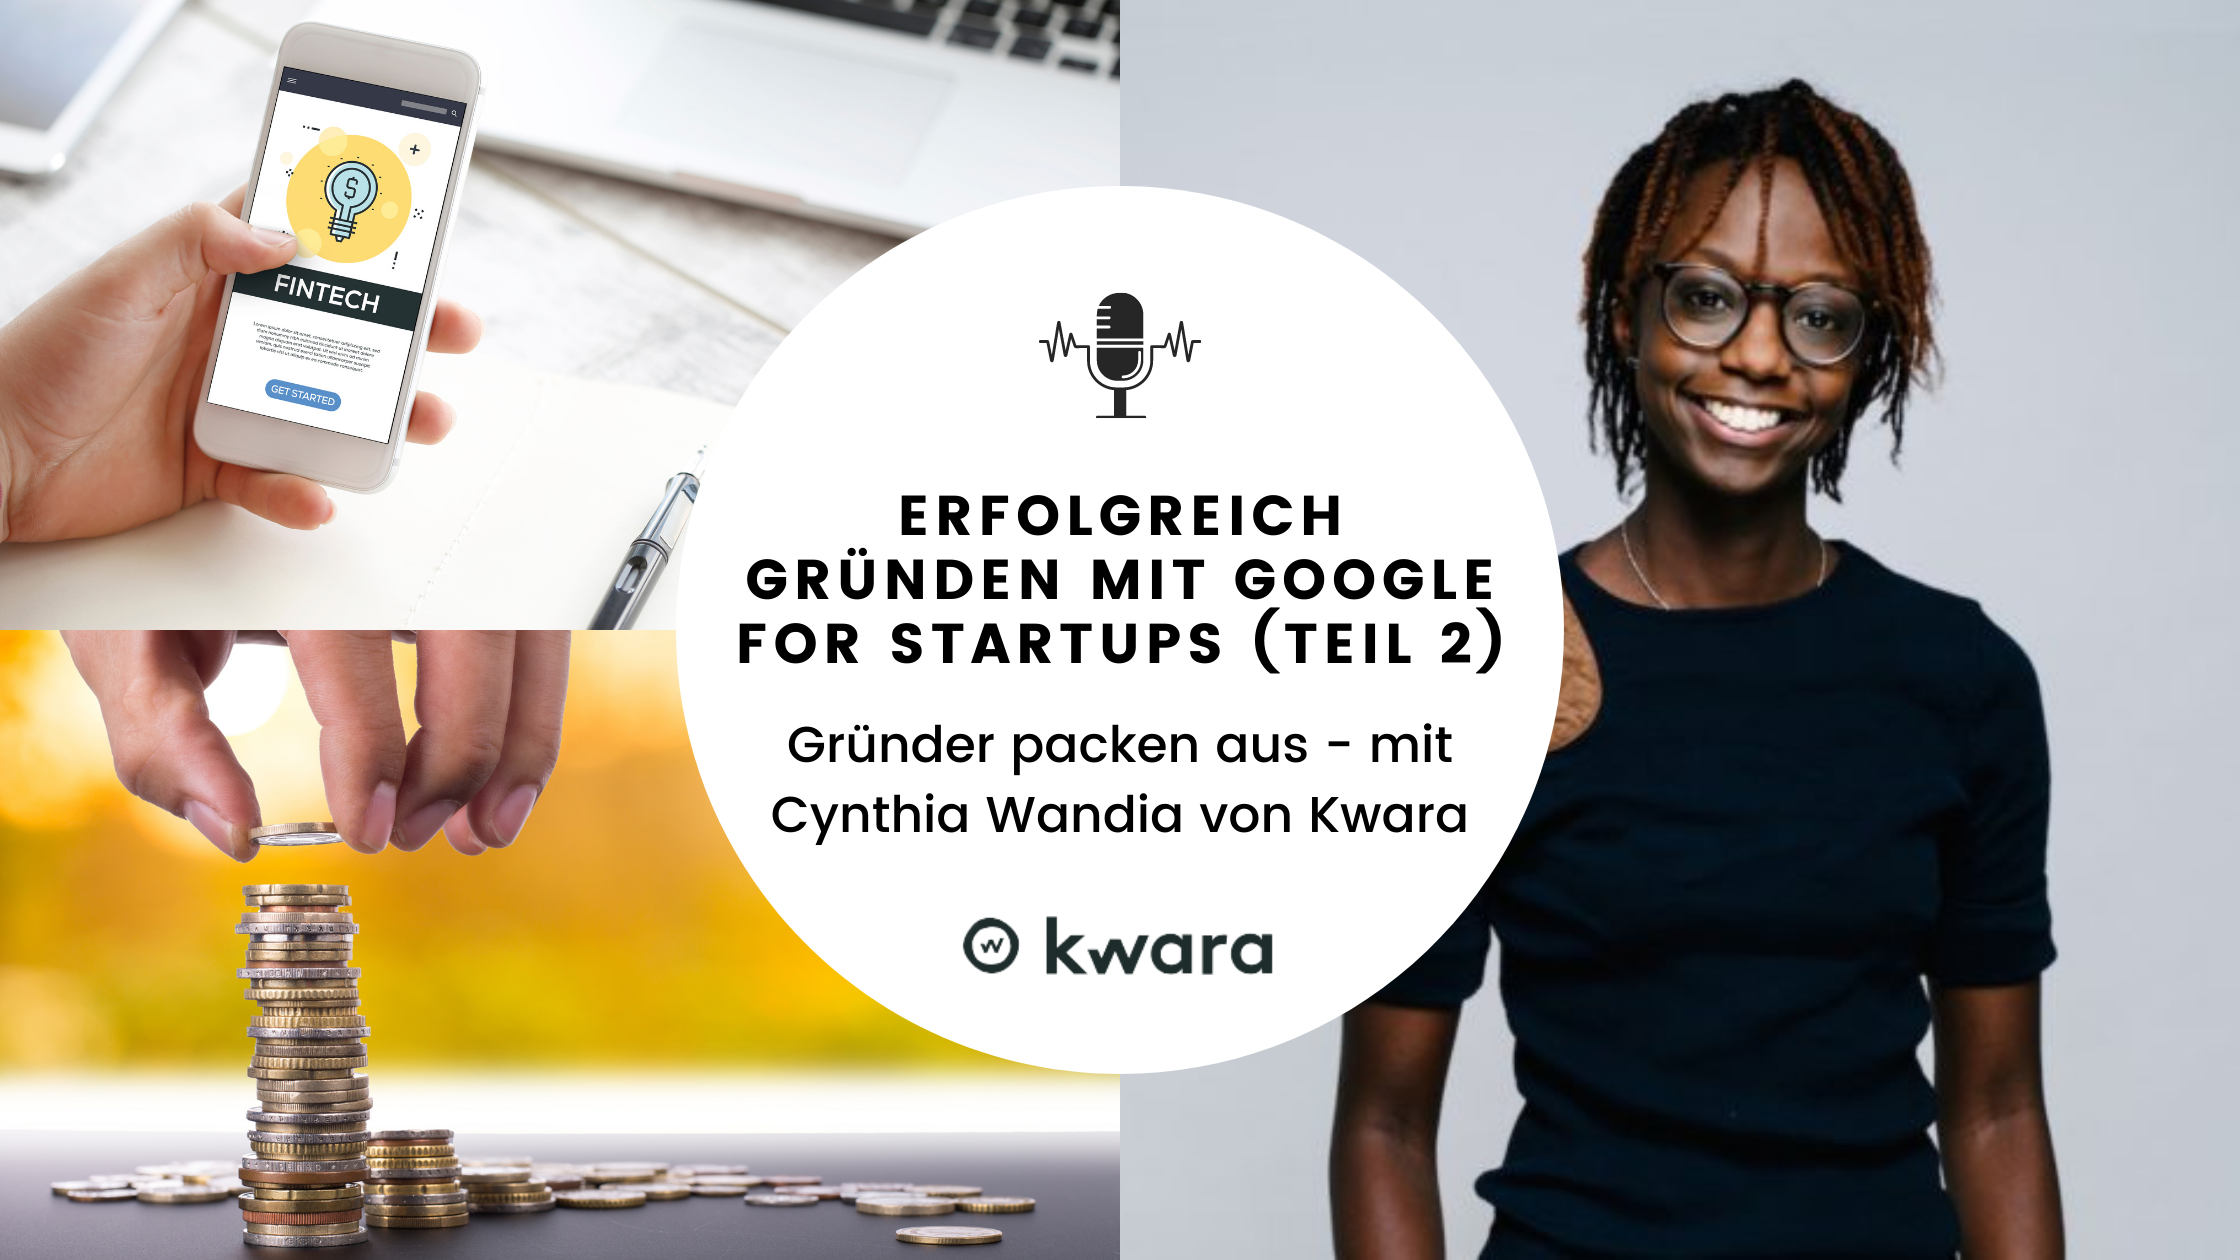 Erfolgreich gründen mit Google for Startups - Gründer packen aus mit Cynthia Wandia (Teil 2)￼￼